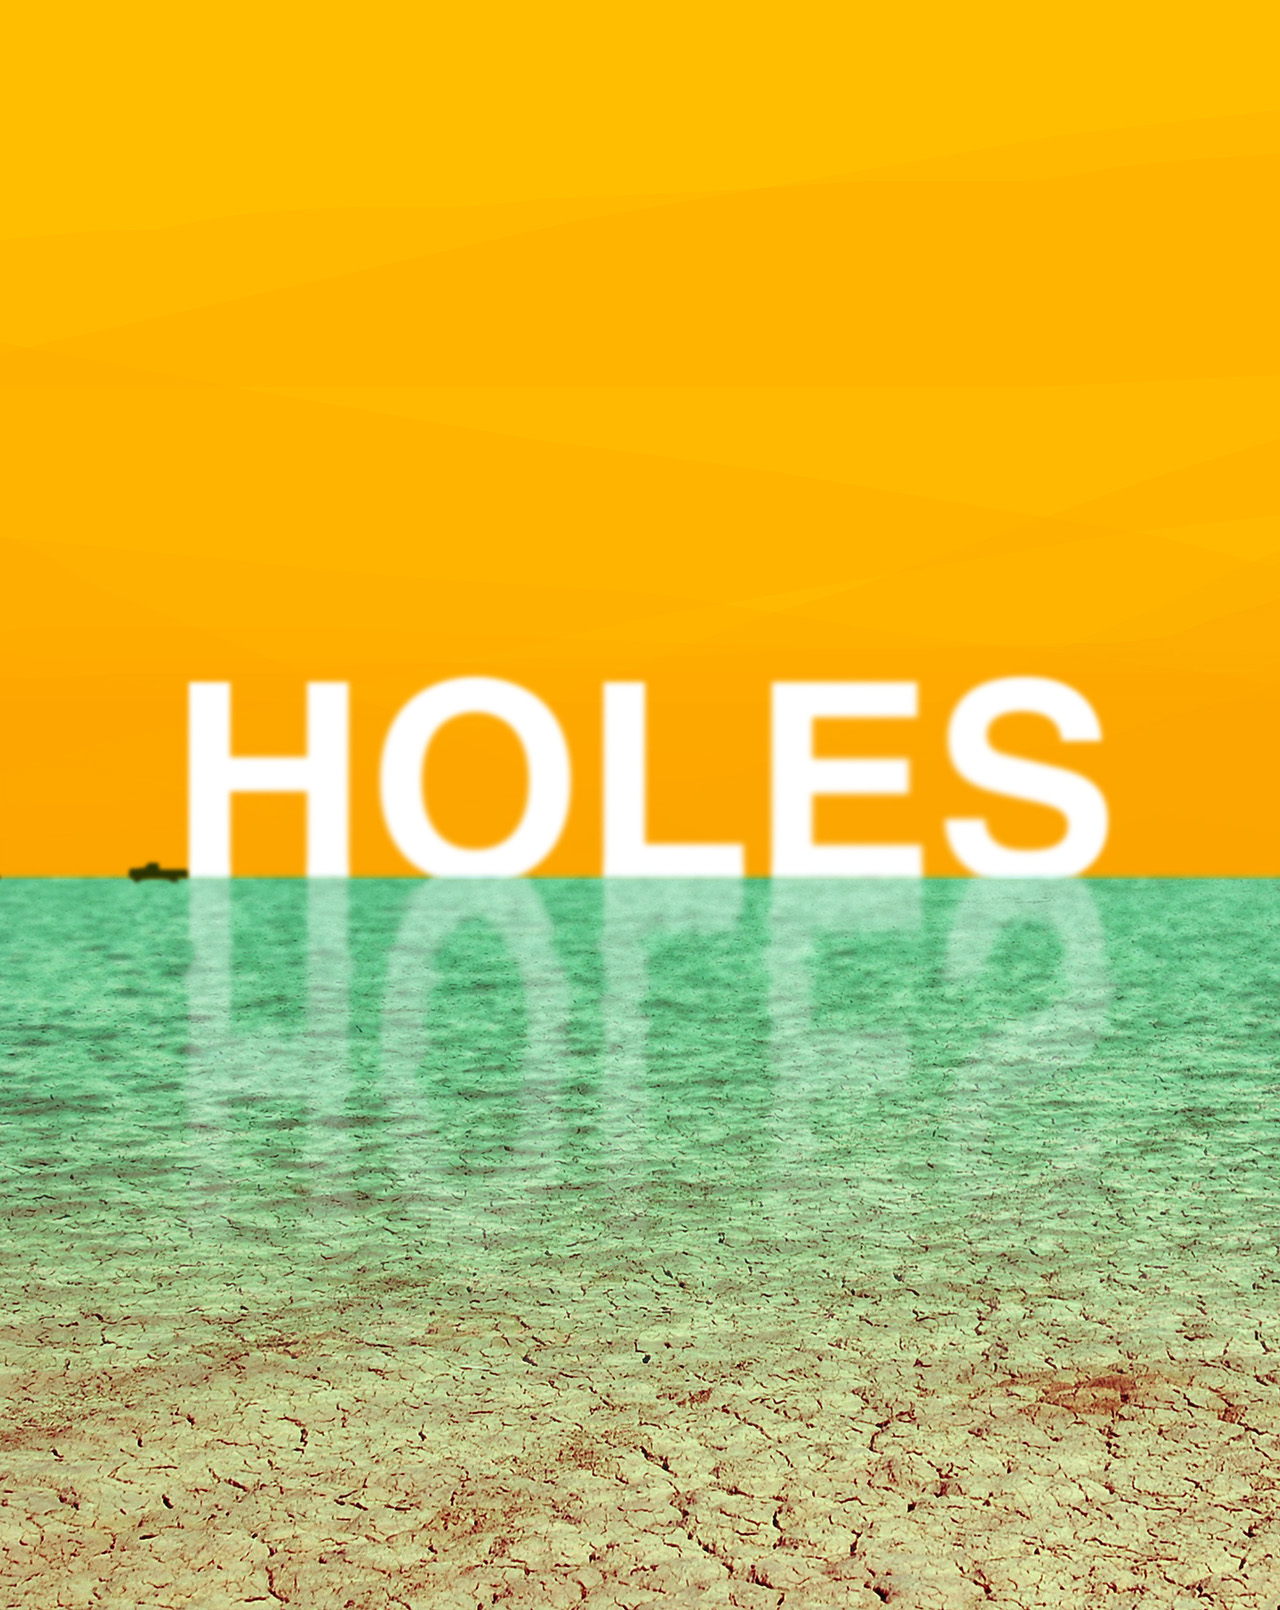 Trent Szente | "Holes" by Louis Sachar